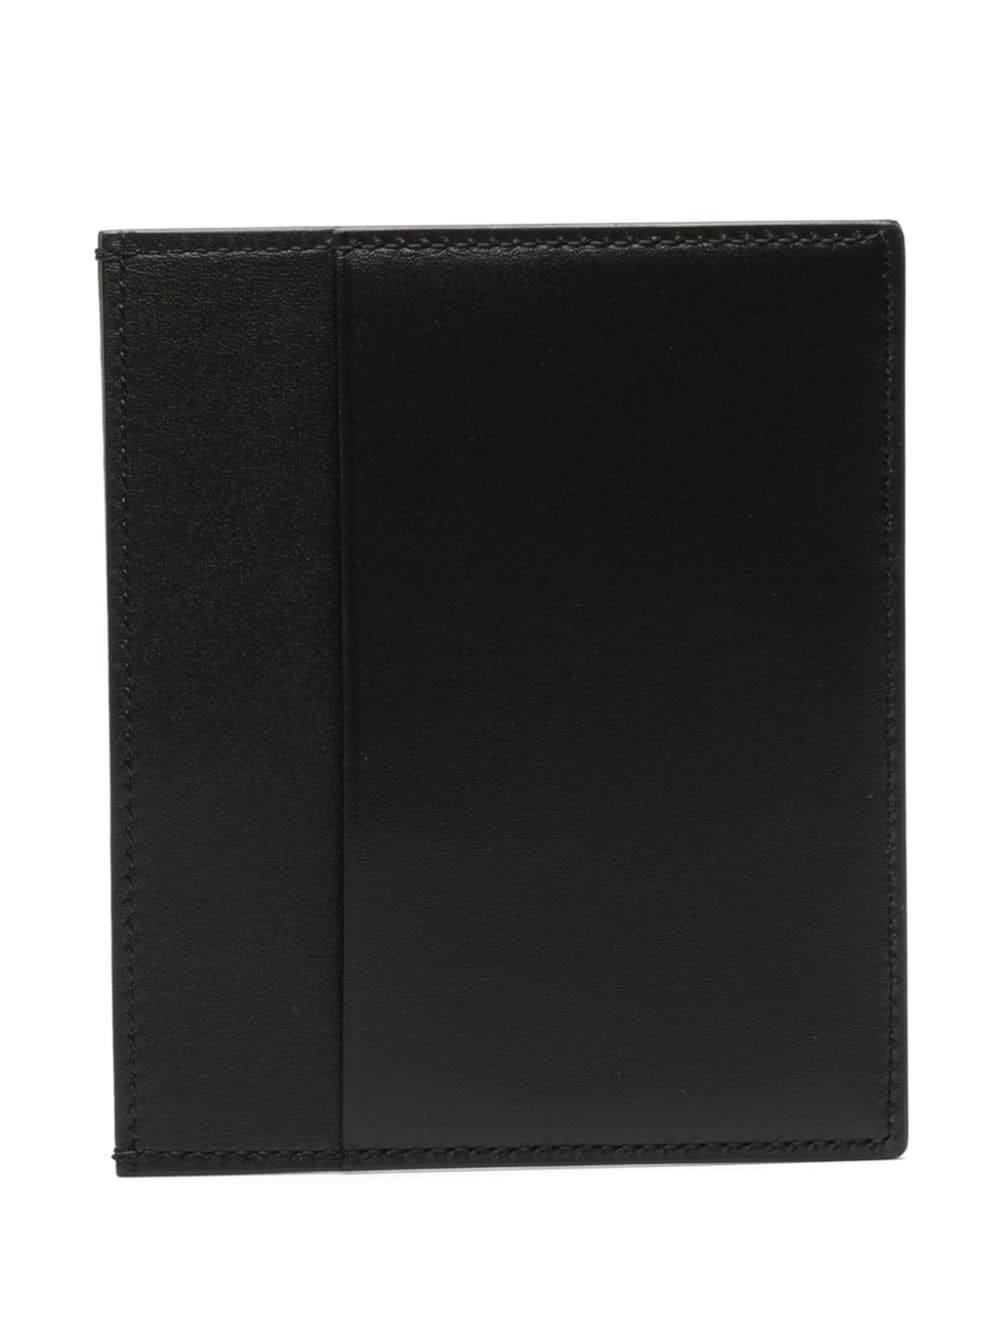 Jil Sander leather vertical cardholder - Black